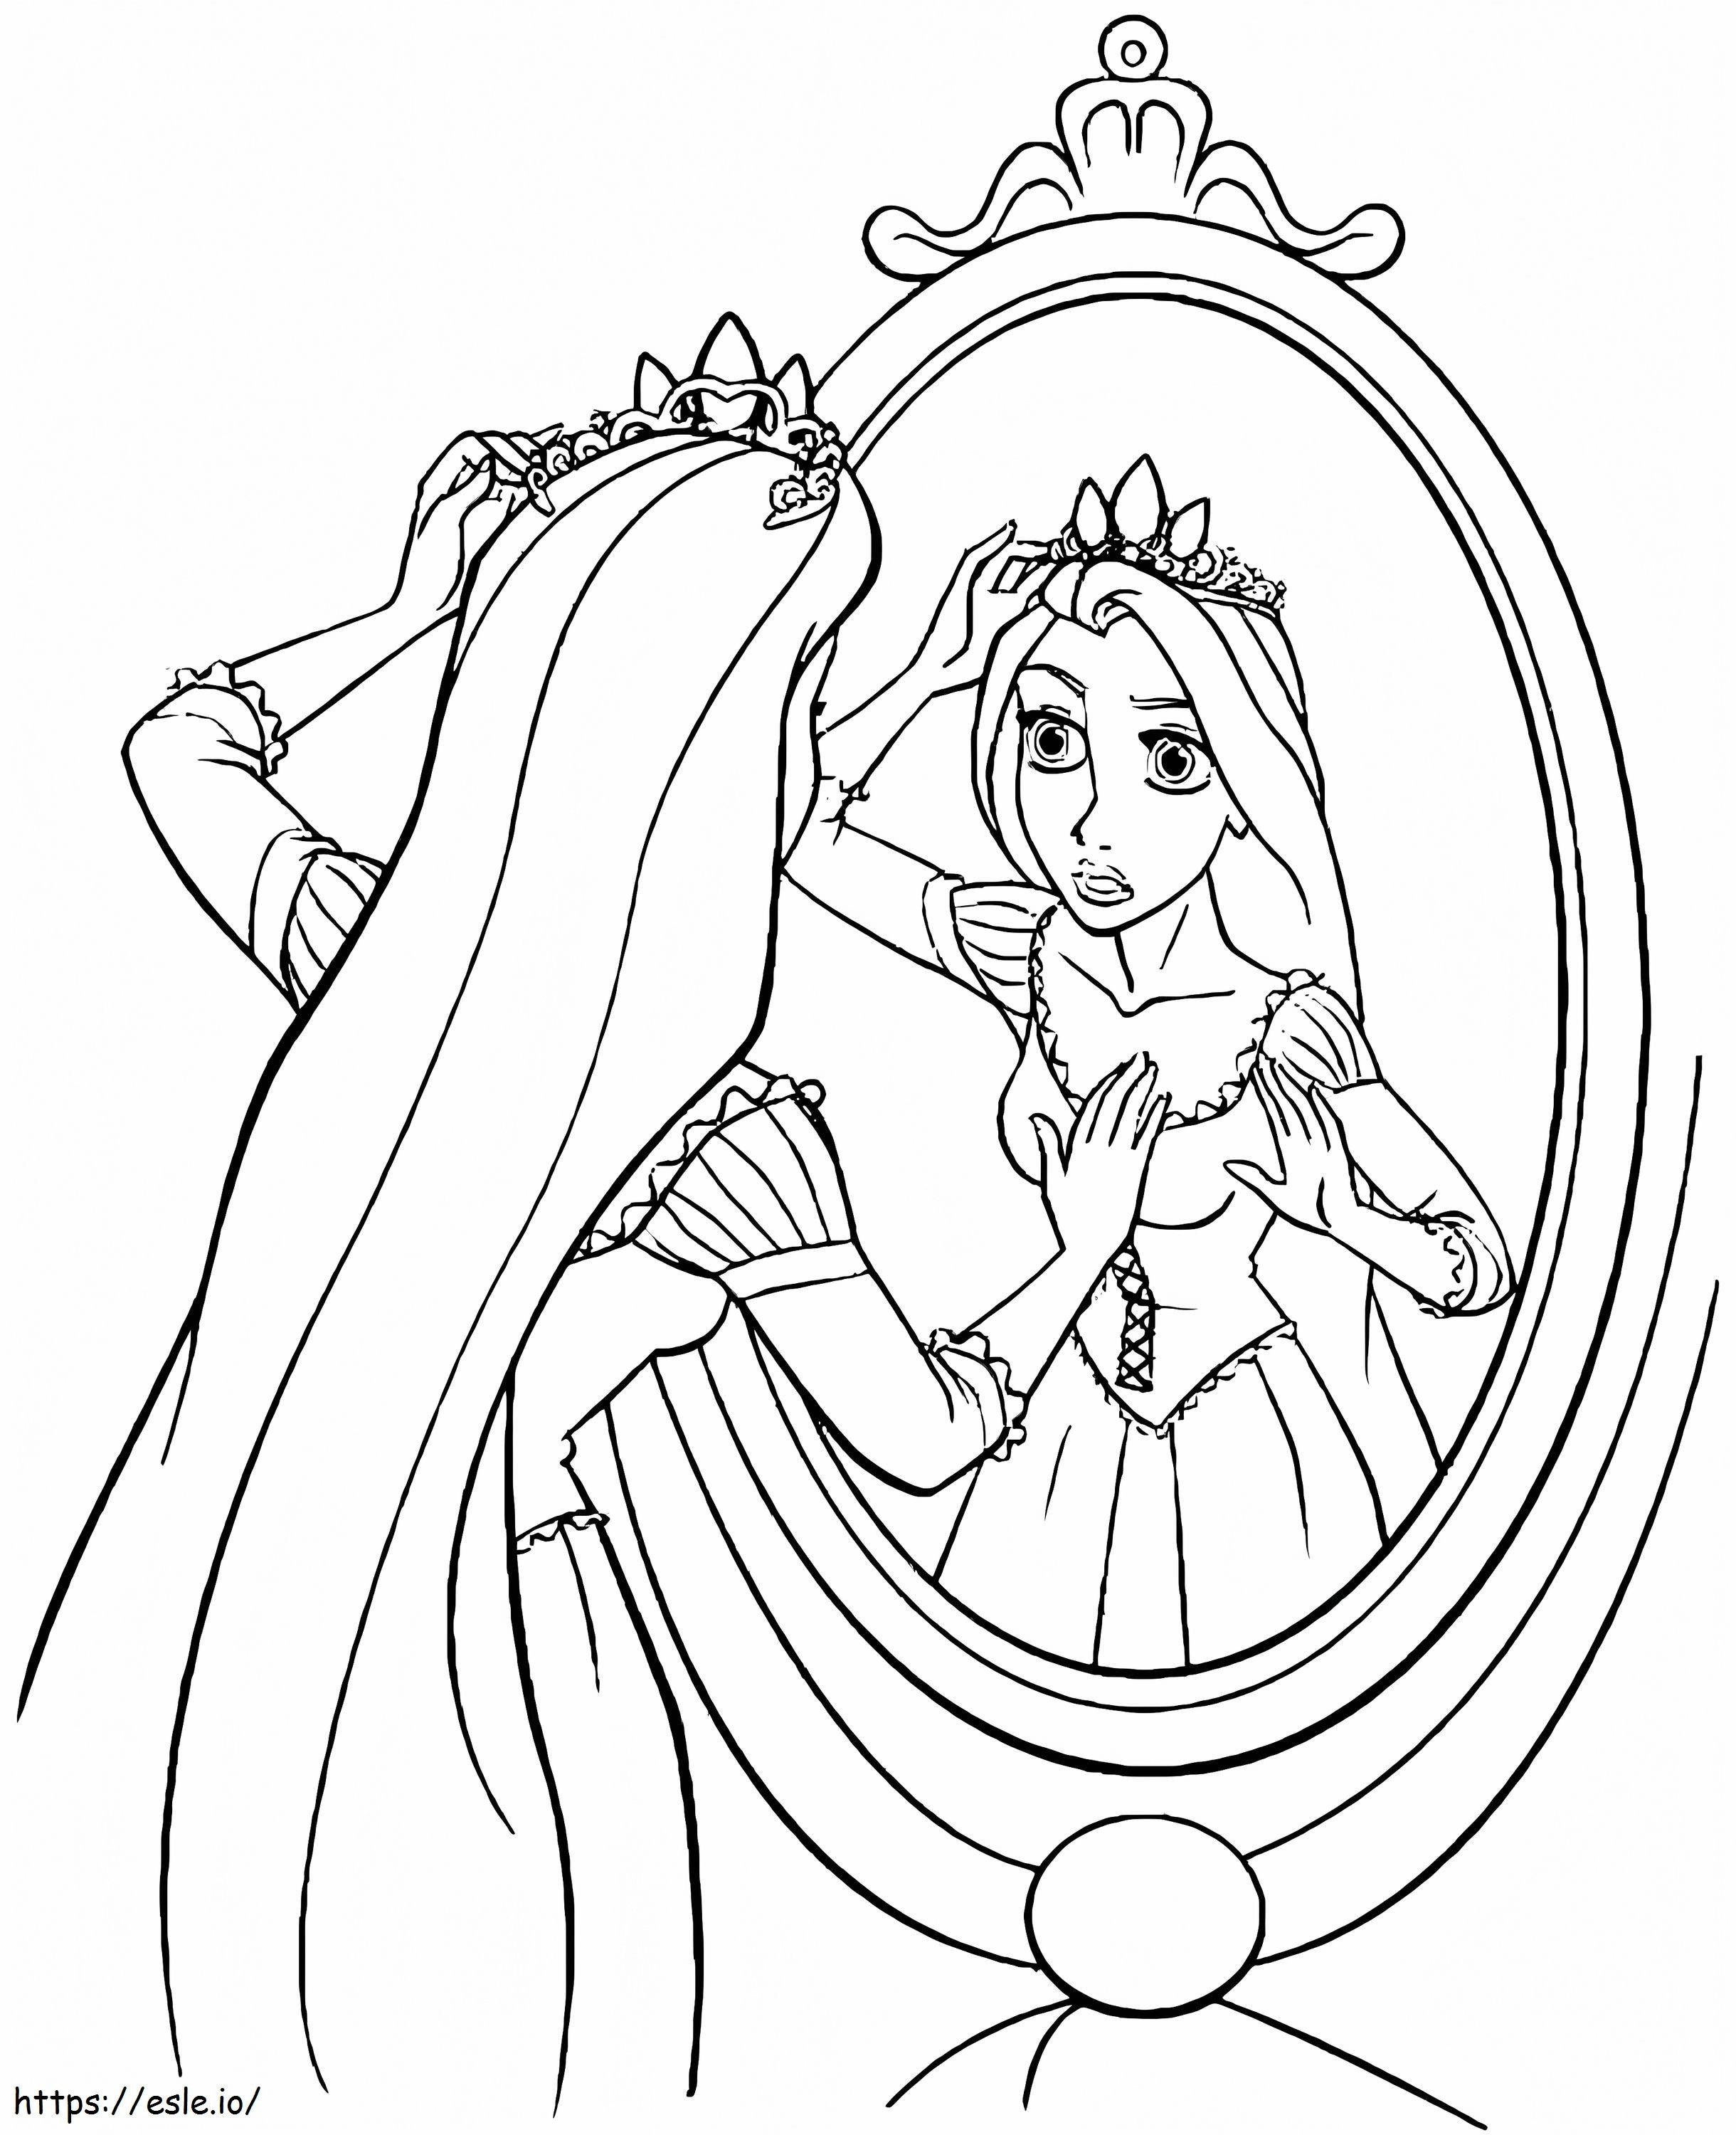 Princesa Rapunzel no espelho para colorir